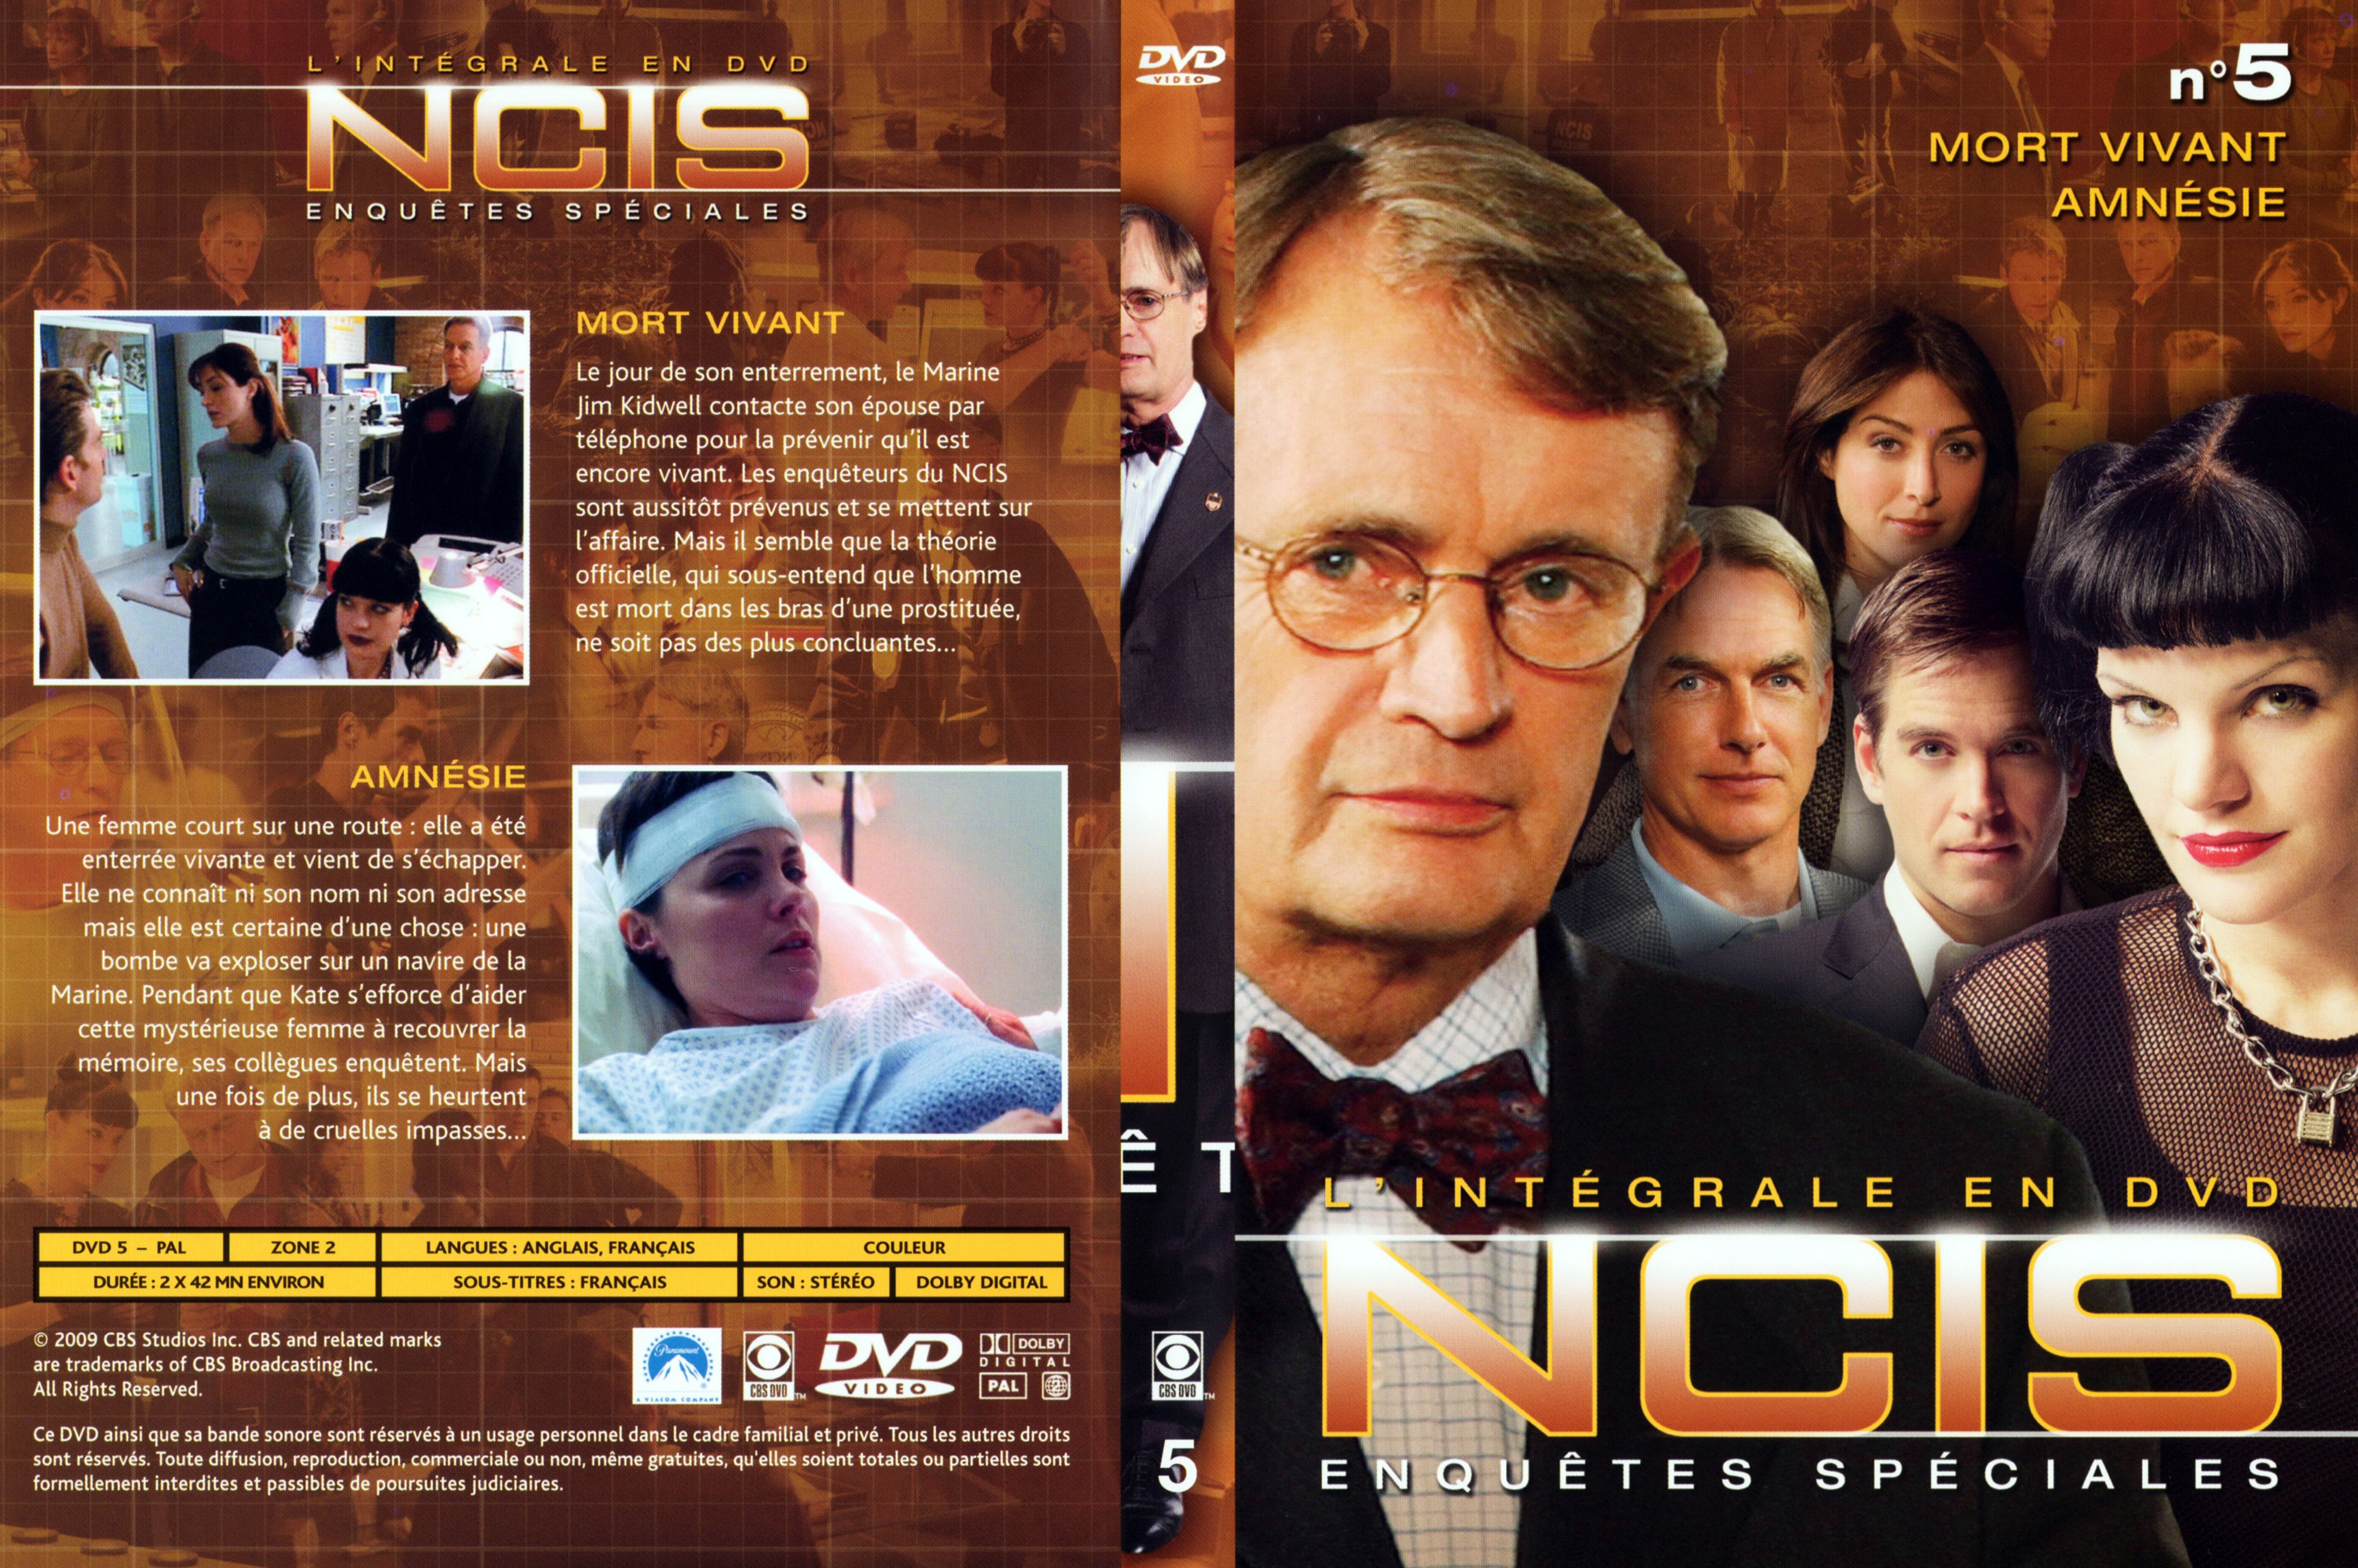 Jaquette DVD NCIS Integrale DVD 5